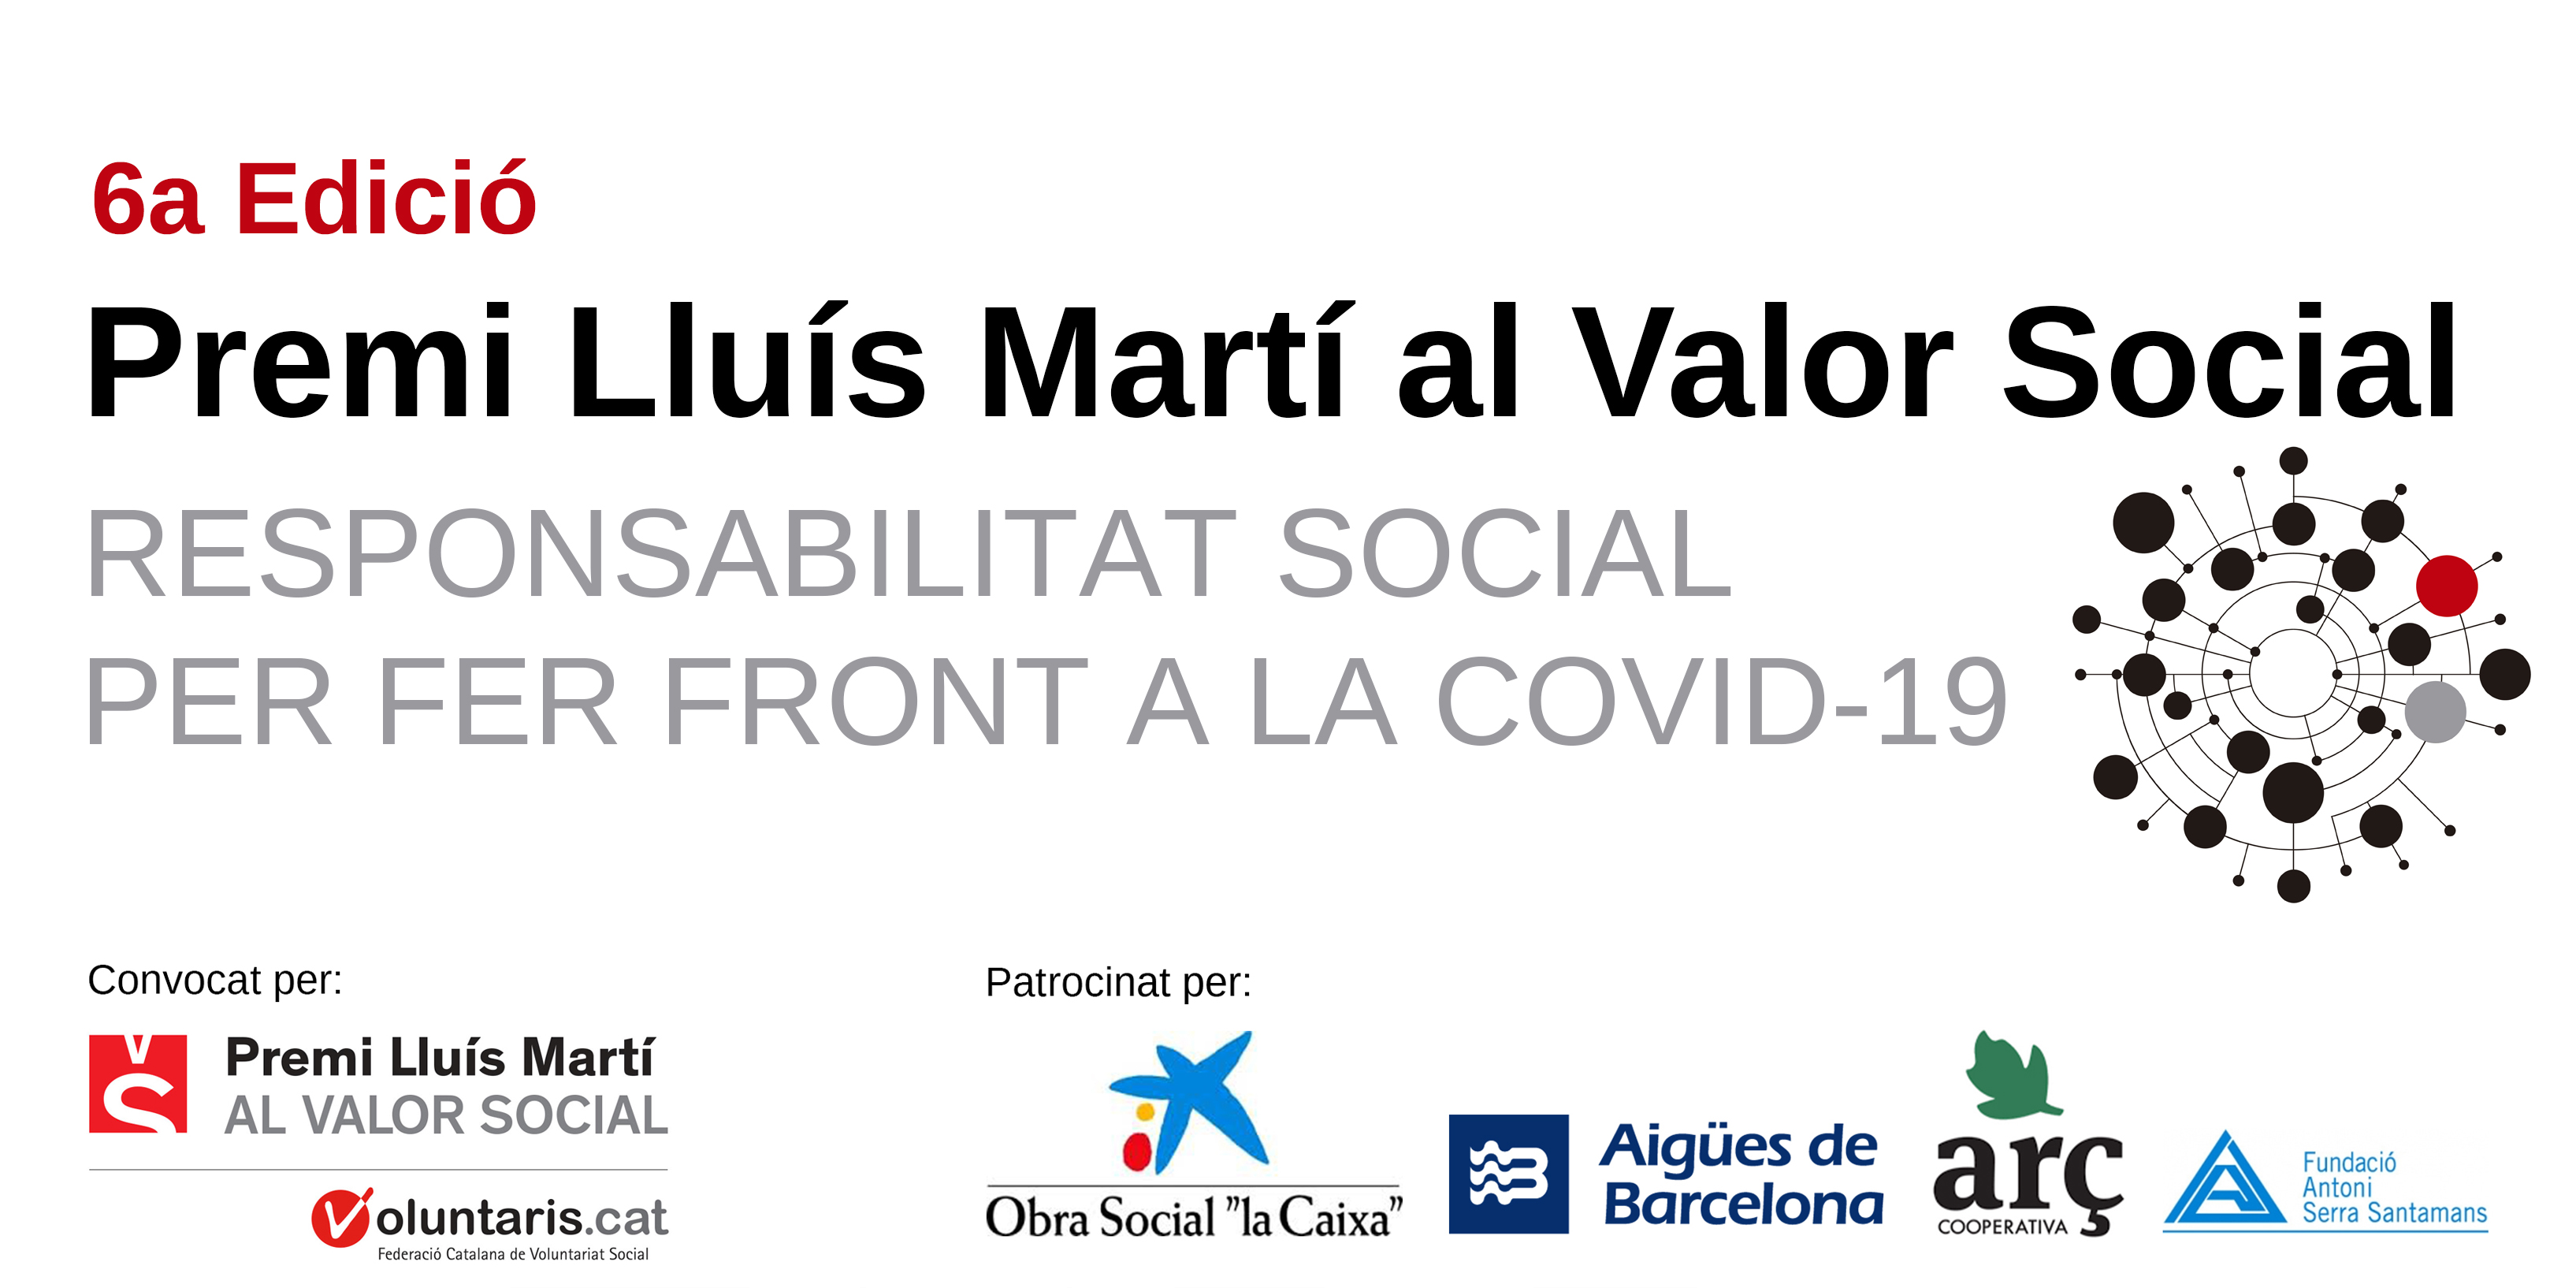 6a edició del Premi Lluís Martí al Valor Social